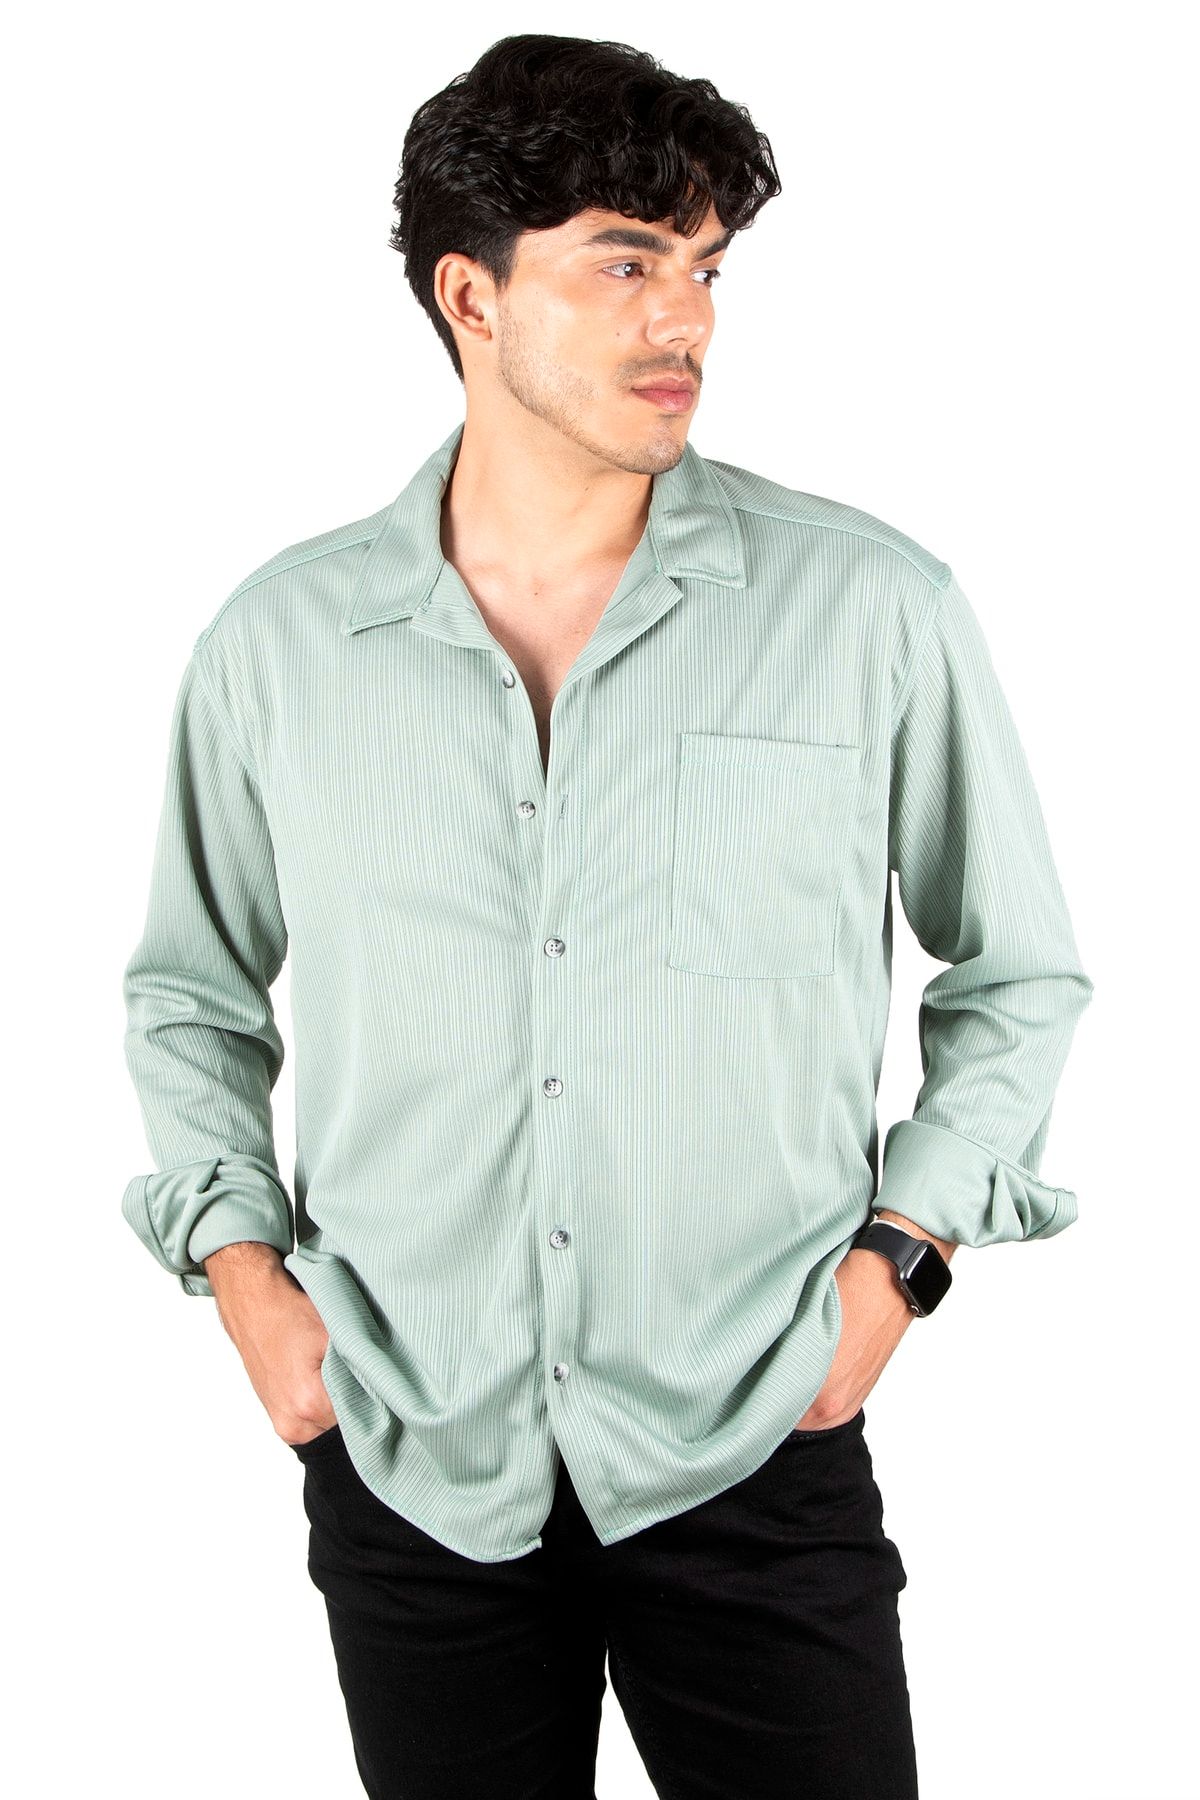 DeepSea Erkek Yeşil Çizgi Desenli Tek Cepli Uzun Kollu Likralı Örme Kumaş Slim Fit Gömlek 2300514